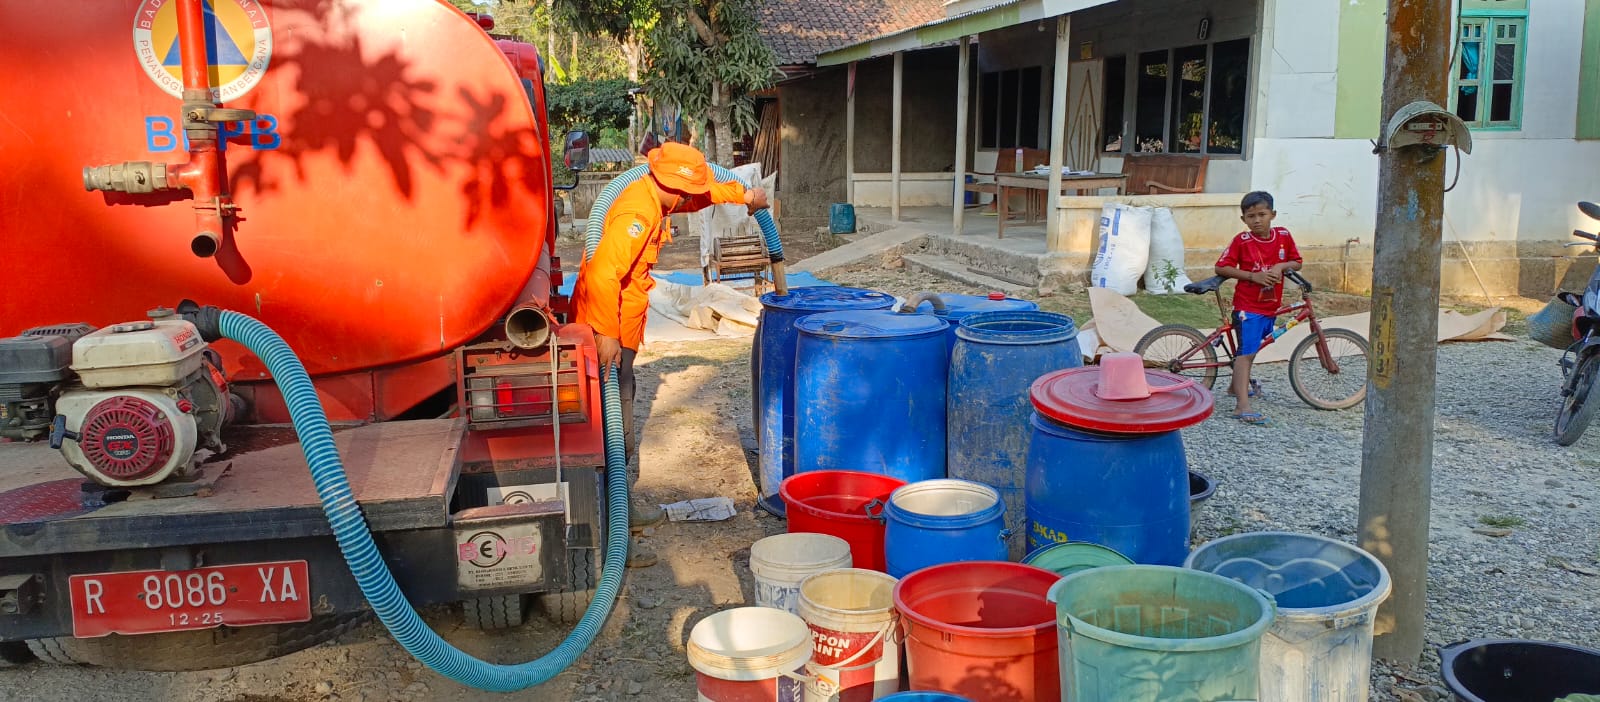 35.371 Jiwa Warga Banyumas Krisis Air Bersih, Berikut Data Per Kecamatan yang Terdampak